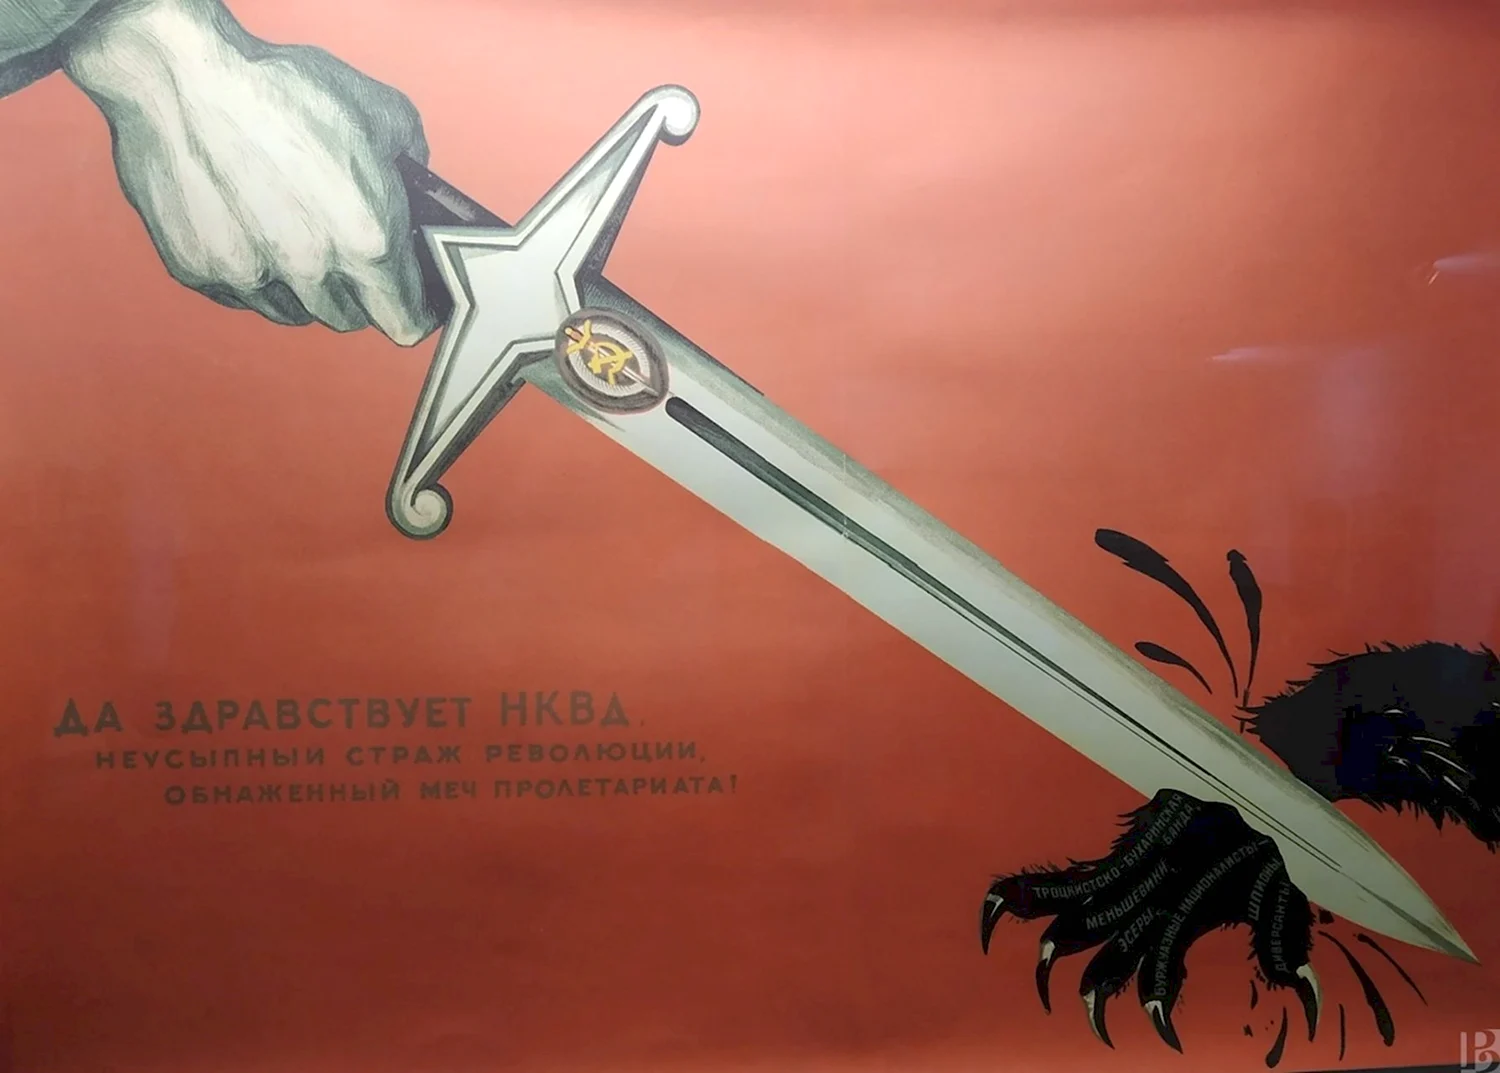 Да здравствует НКВД неусыпный плакат